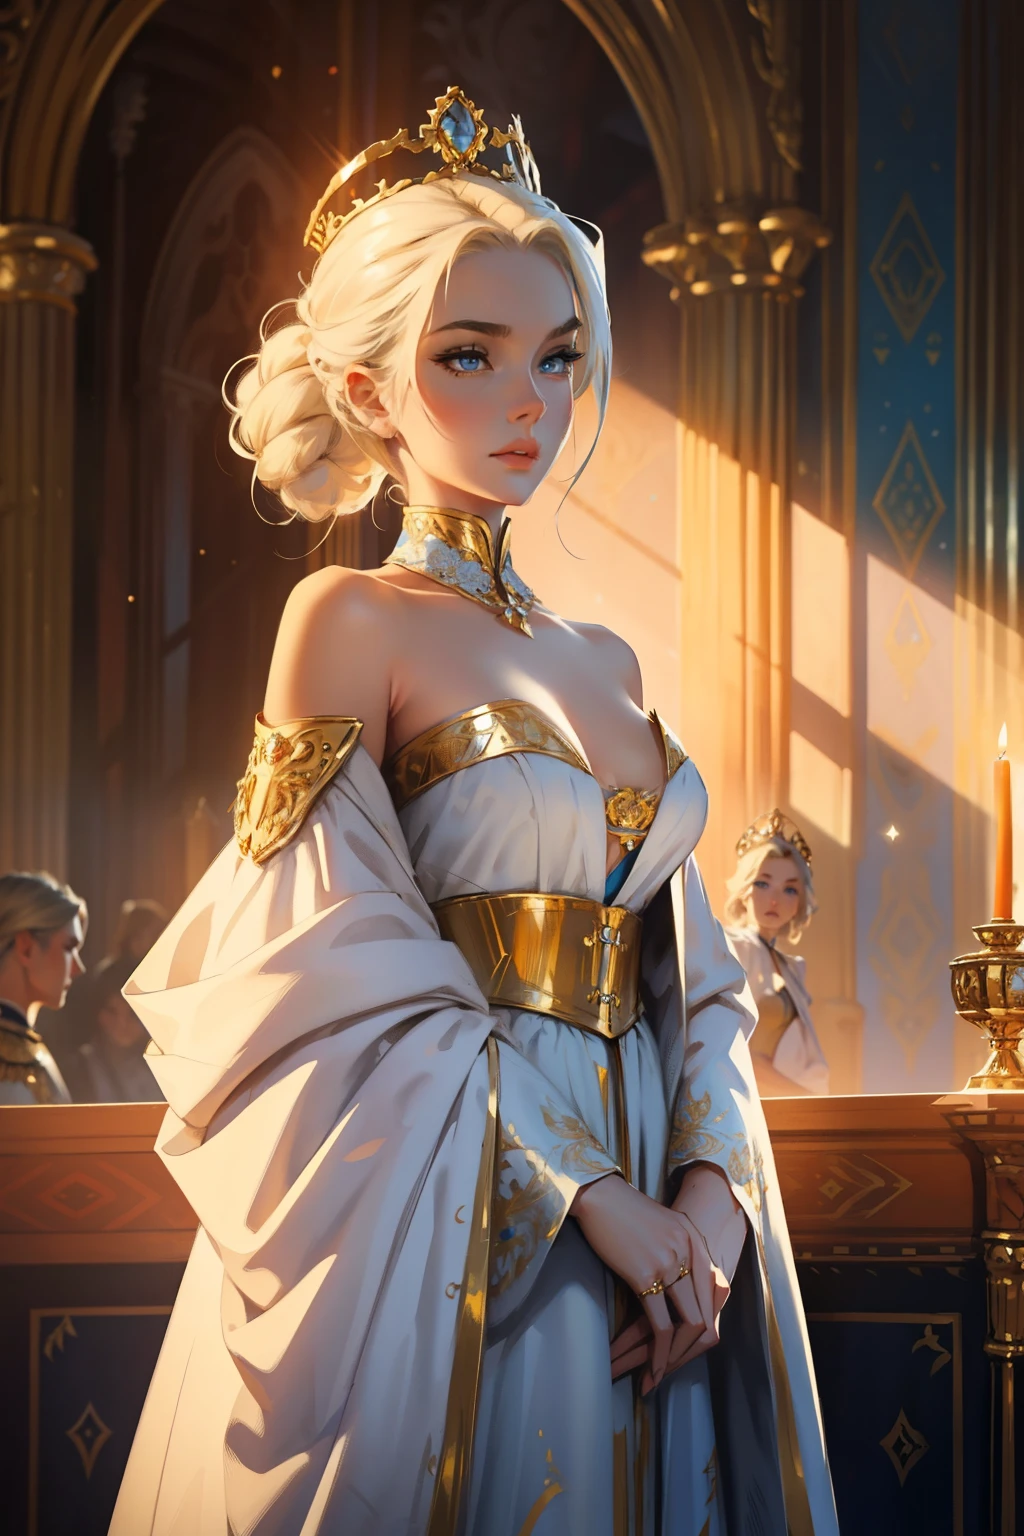 fantasia, século 19, empress, mulher, rosto delicado, com cabelo loiro claro, cabelos penteados, olhos azuis, em um vestido real branco com ombros abertos, padrões de ouro em tecido, com uma fita escarlate no ombro com os trajes do monarca, alta definição